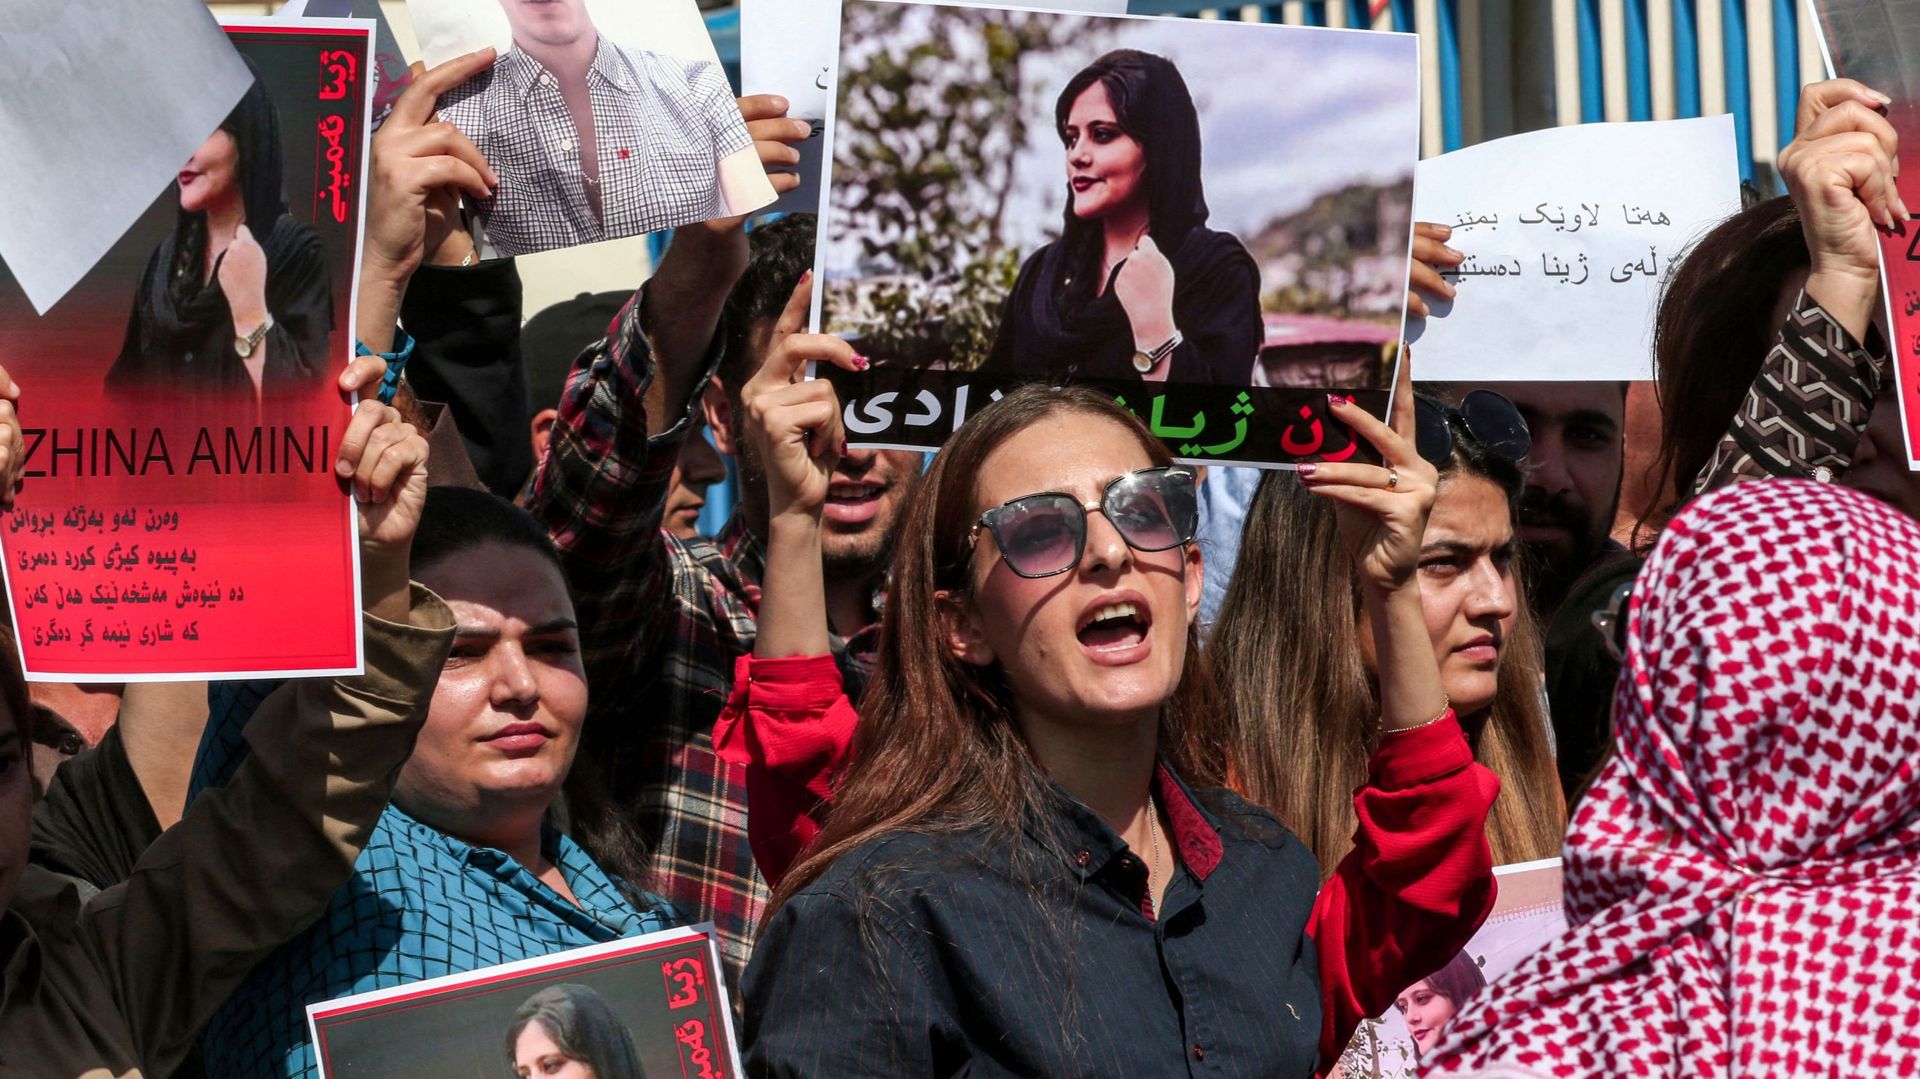 Des femmes scandent des slogans et brandissent des pancartes représentant l’image de Mahsa Amini, 22 ans, décédée alors qu’elle était détenue par les autorités iraniennes, lors d’une manifestation dénonçant sa mort, organisée par des Kurdes irakiens et ir